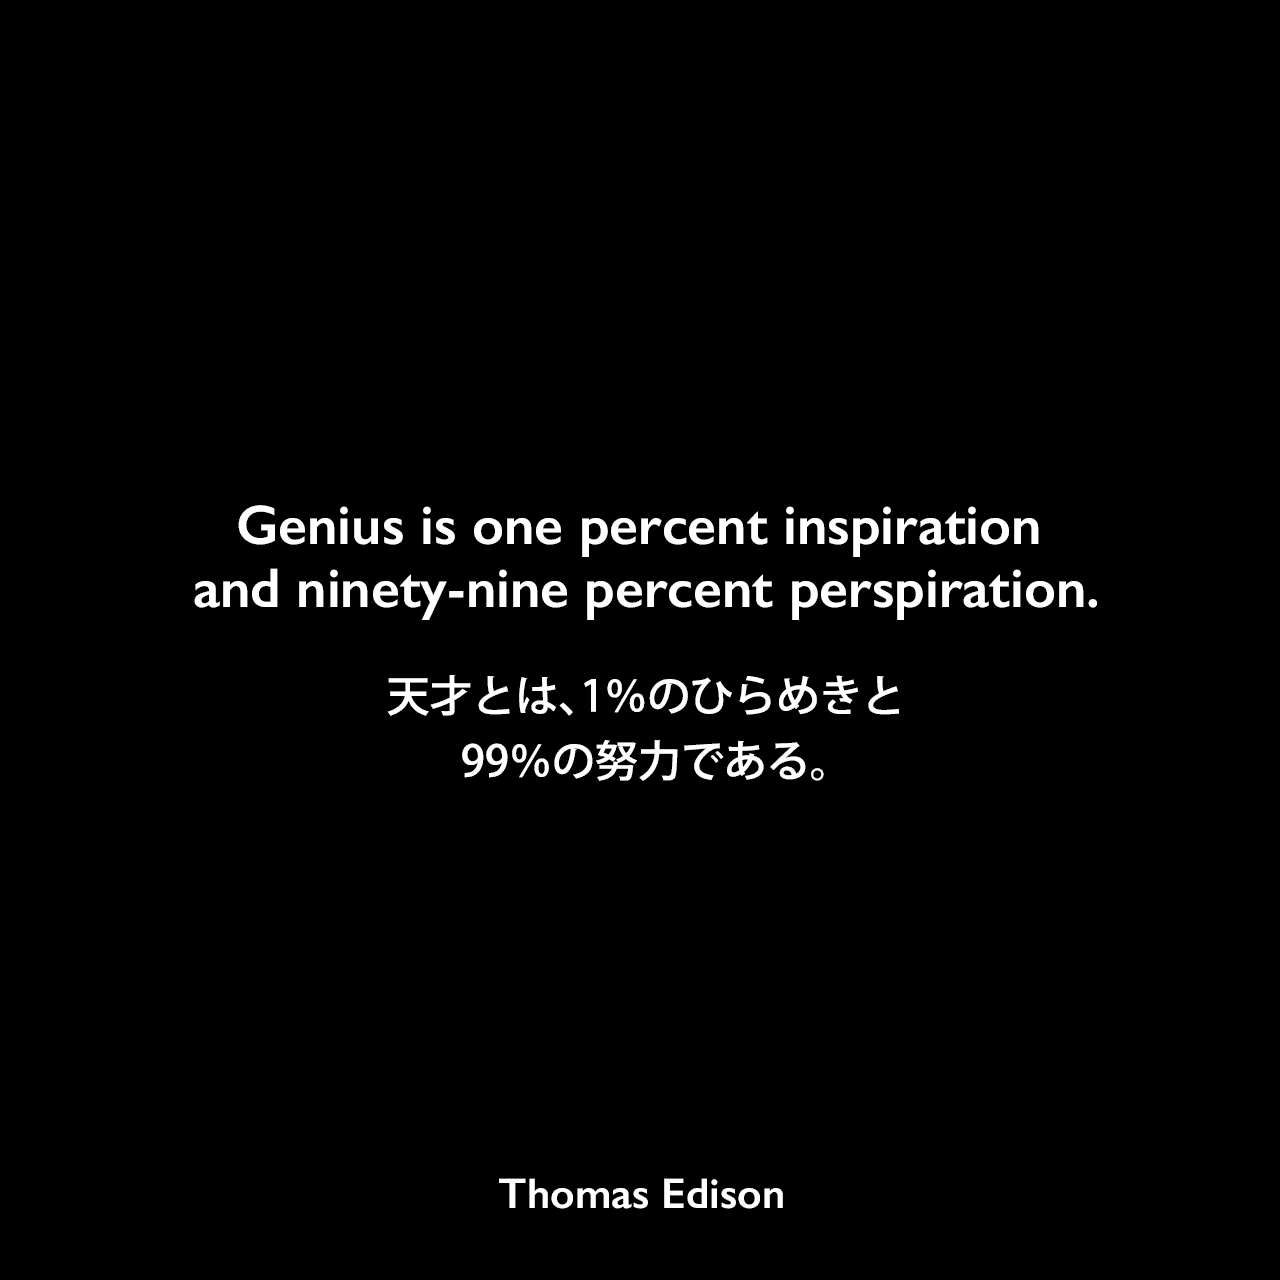 Genius is one percent inspiration and ninety-nine percent perspiration.天才とは、1％のひらめきと99％の努力である。- 1932年9月号 ハーパーズ バザー誌にエジソンの言葉として掲載Thomas Edison